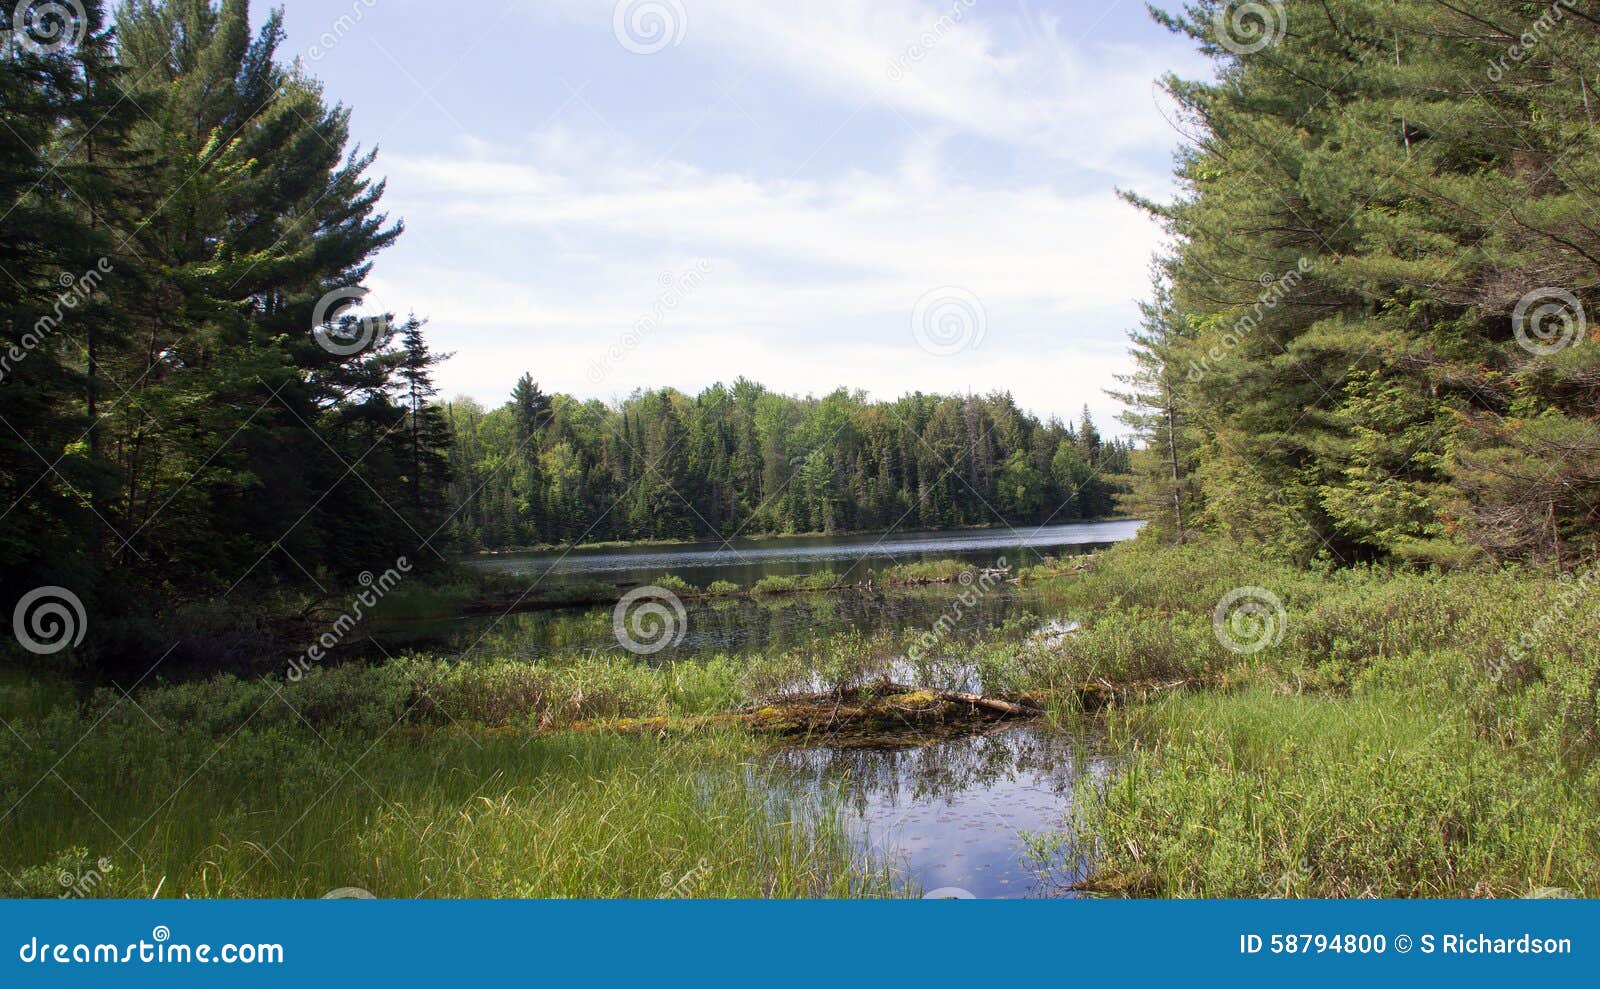 peck lake, algonquin provincial park 5